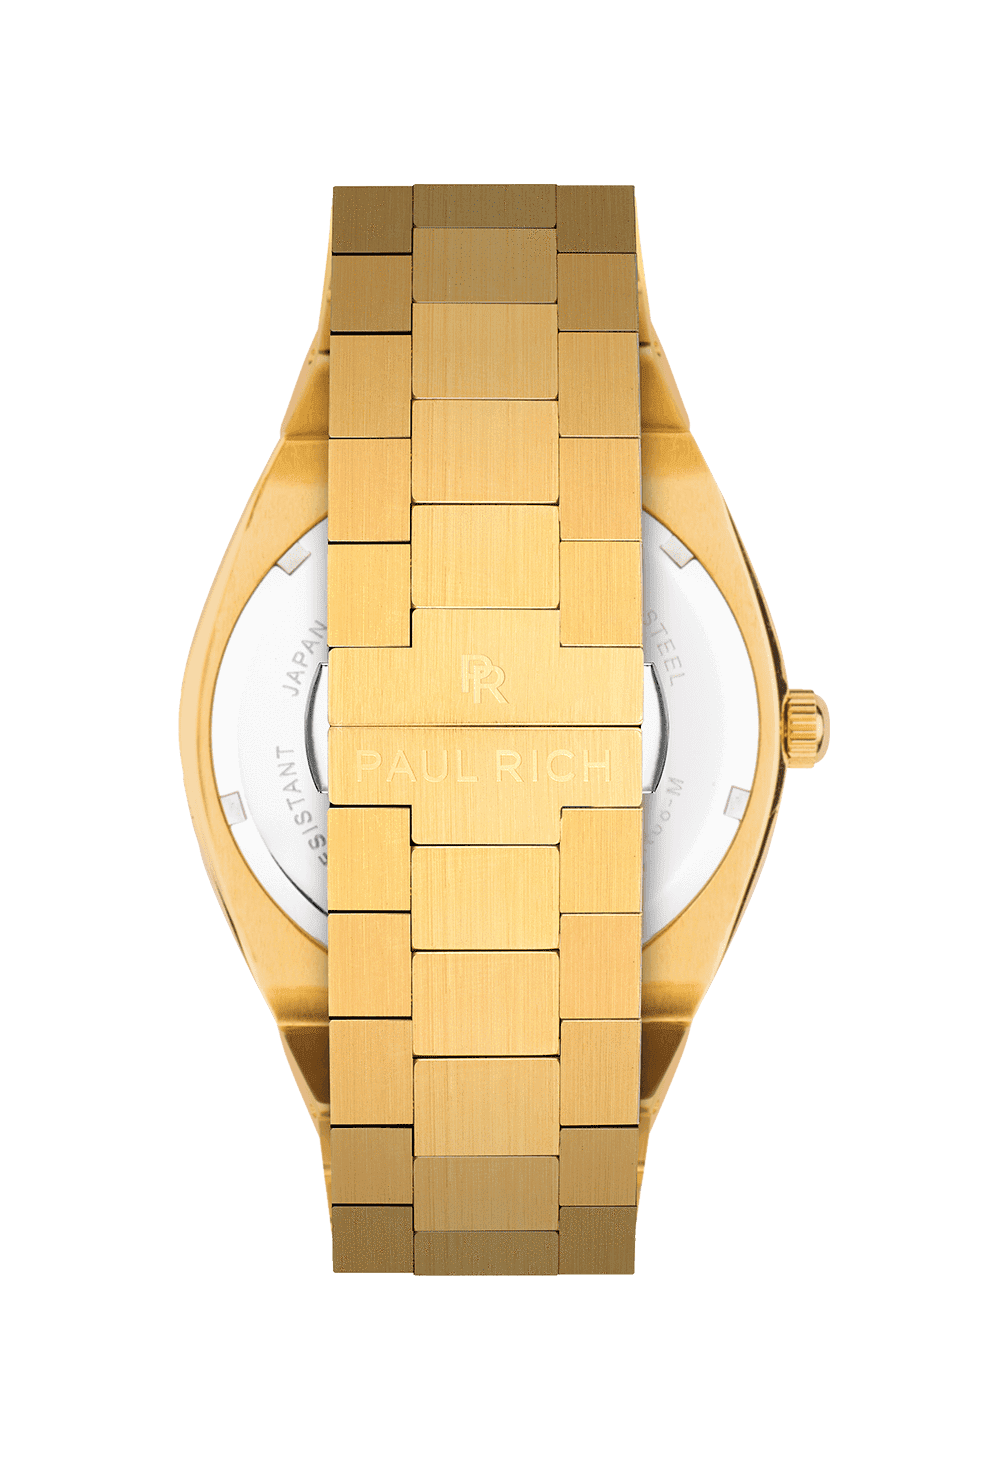 שעון Paul Rich לגבר Royal Touch - מחיר ללא תחרות - אורלנדו שעונים